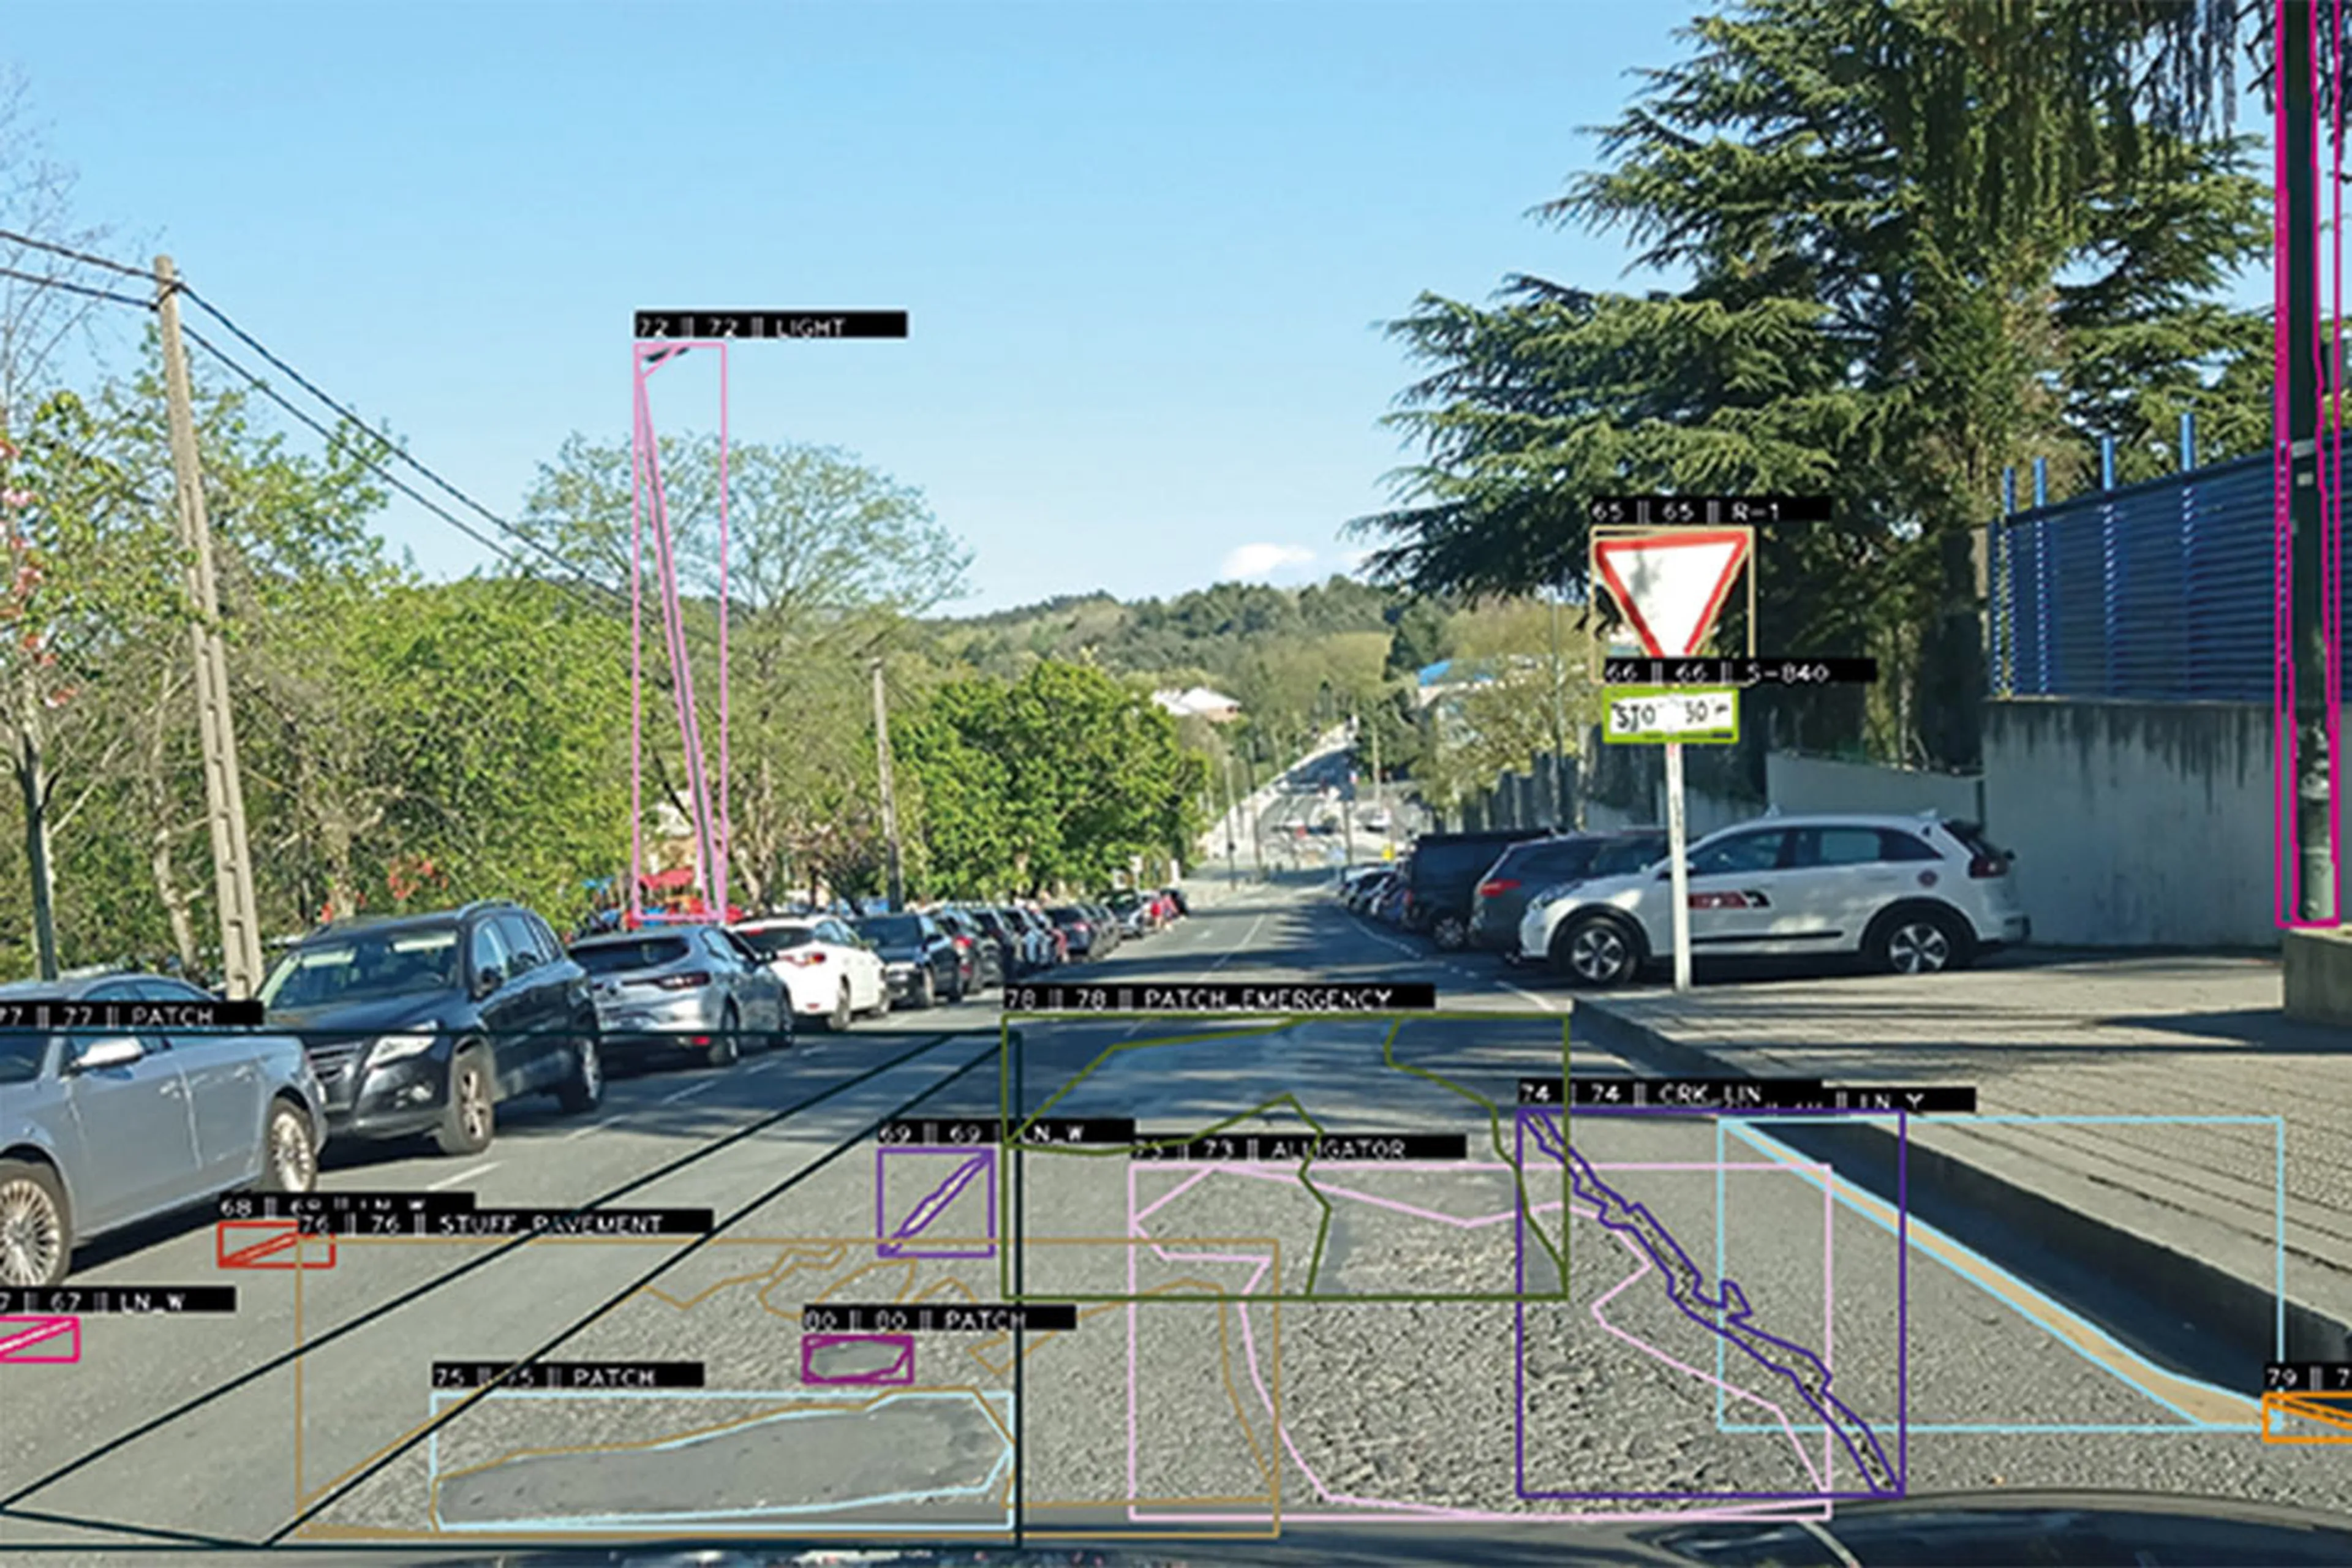 La Inteligencia Artificial ya ayuda a reconocer señales defectuosas y baches en las carreteras gracias a esta empresa española